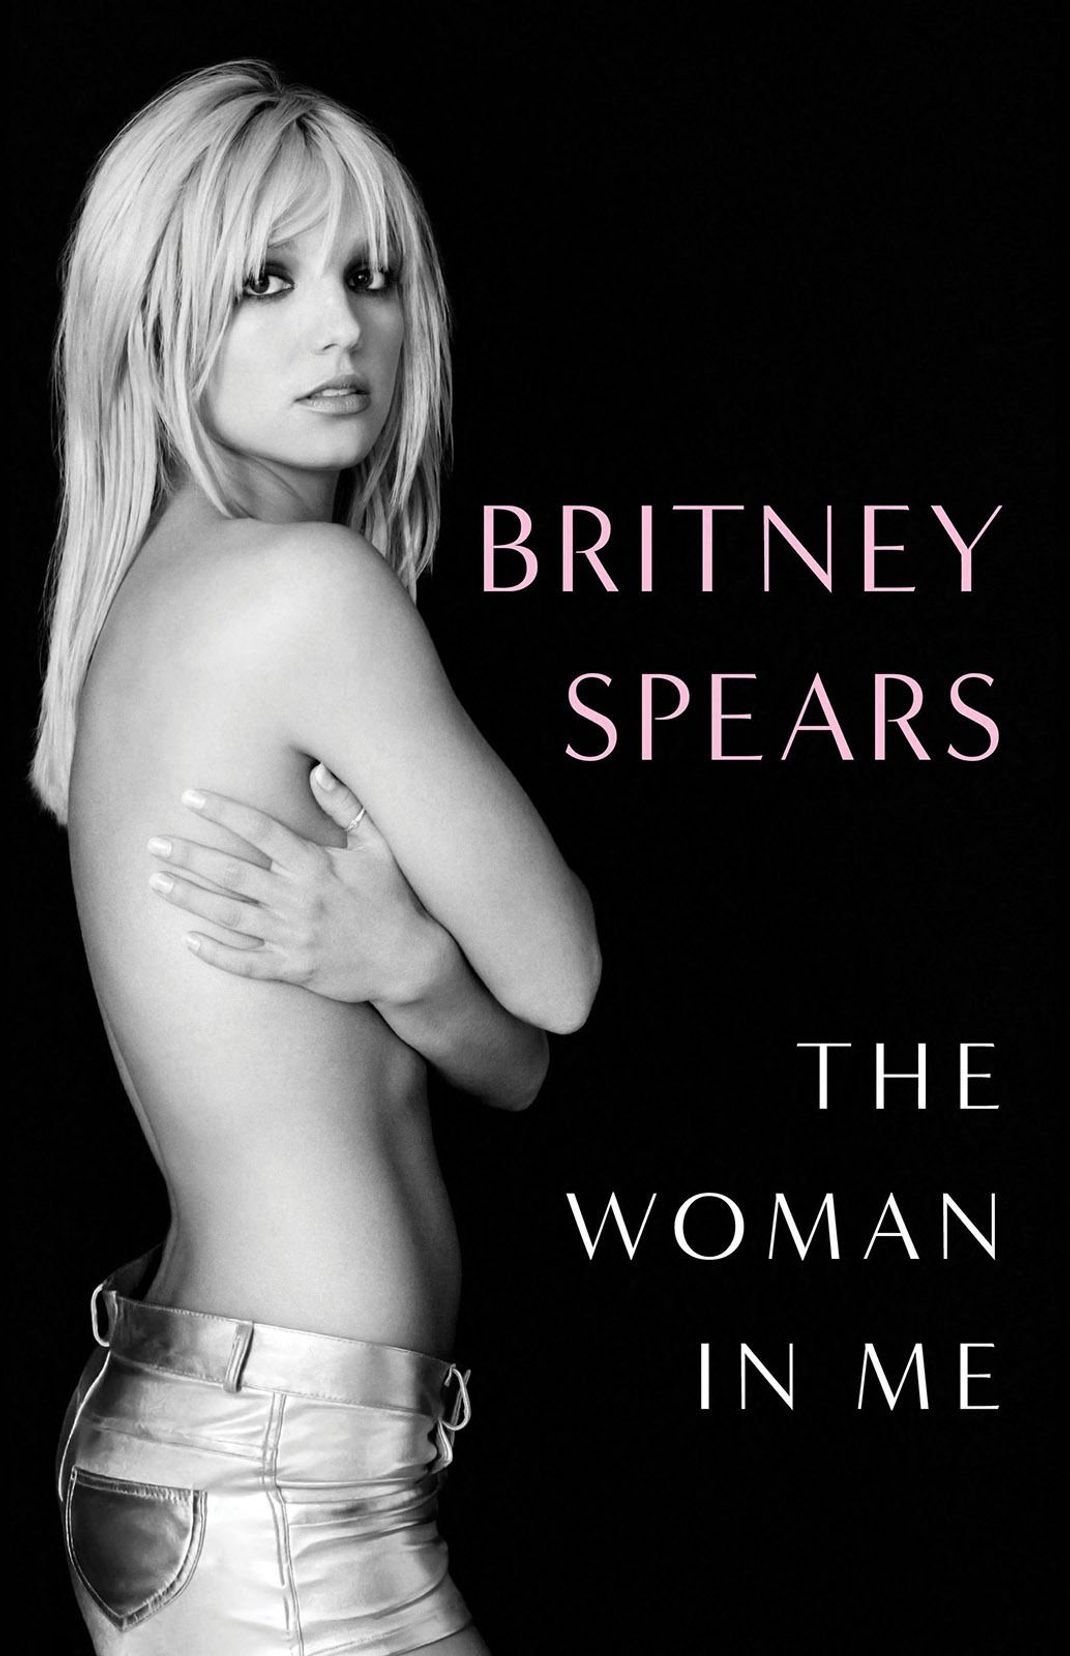 Britney Spears Autobiografie ist am 24. Oktober erschienen.